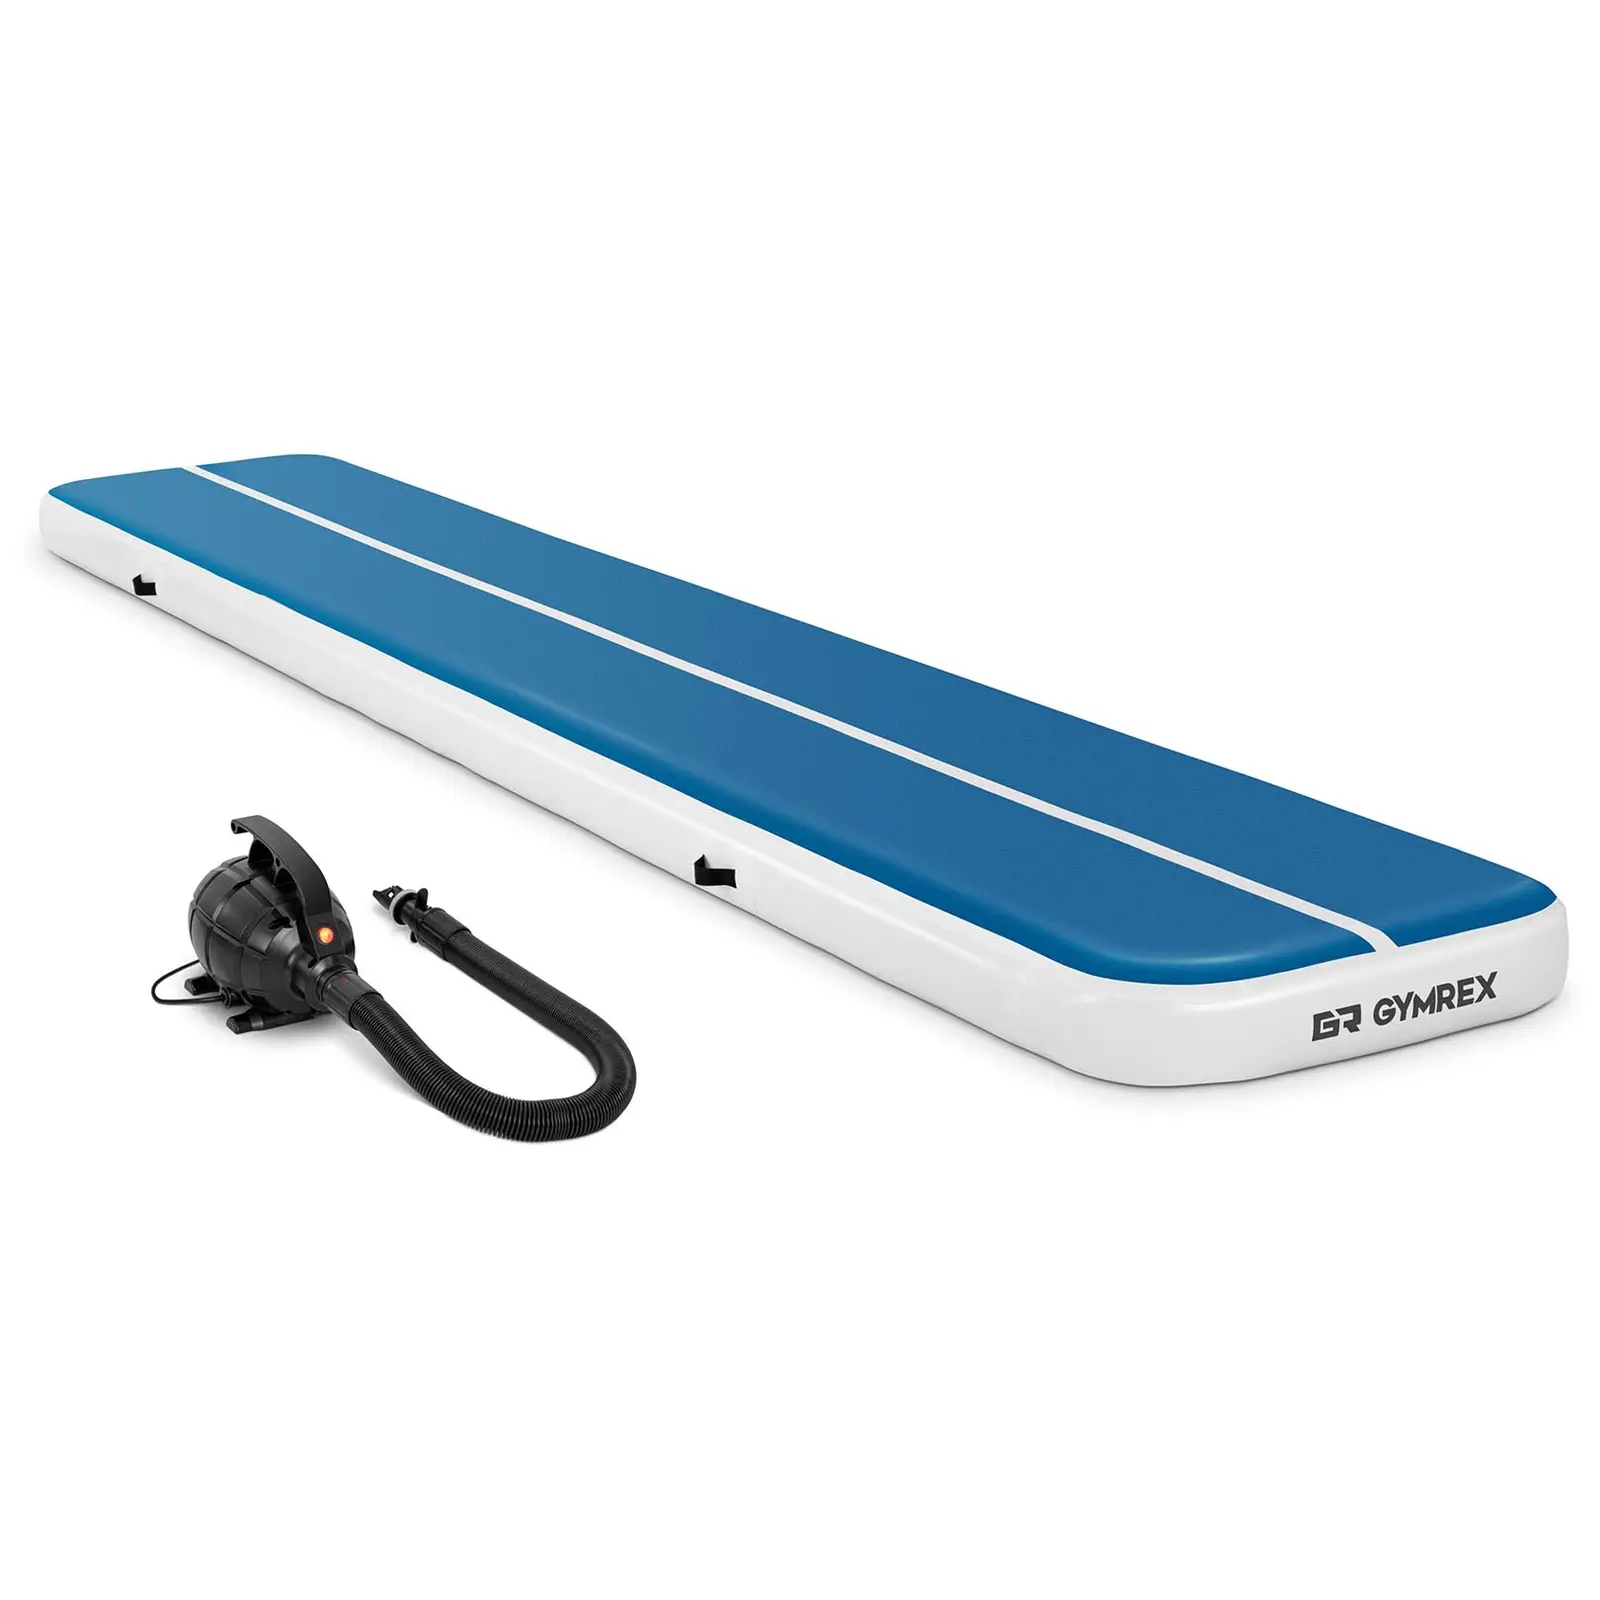 Sett: Oppblåsbar treningsmatte med elektrisk pumpe - 600 x 100 x 20 cm - 300 kg - blå/hvit